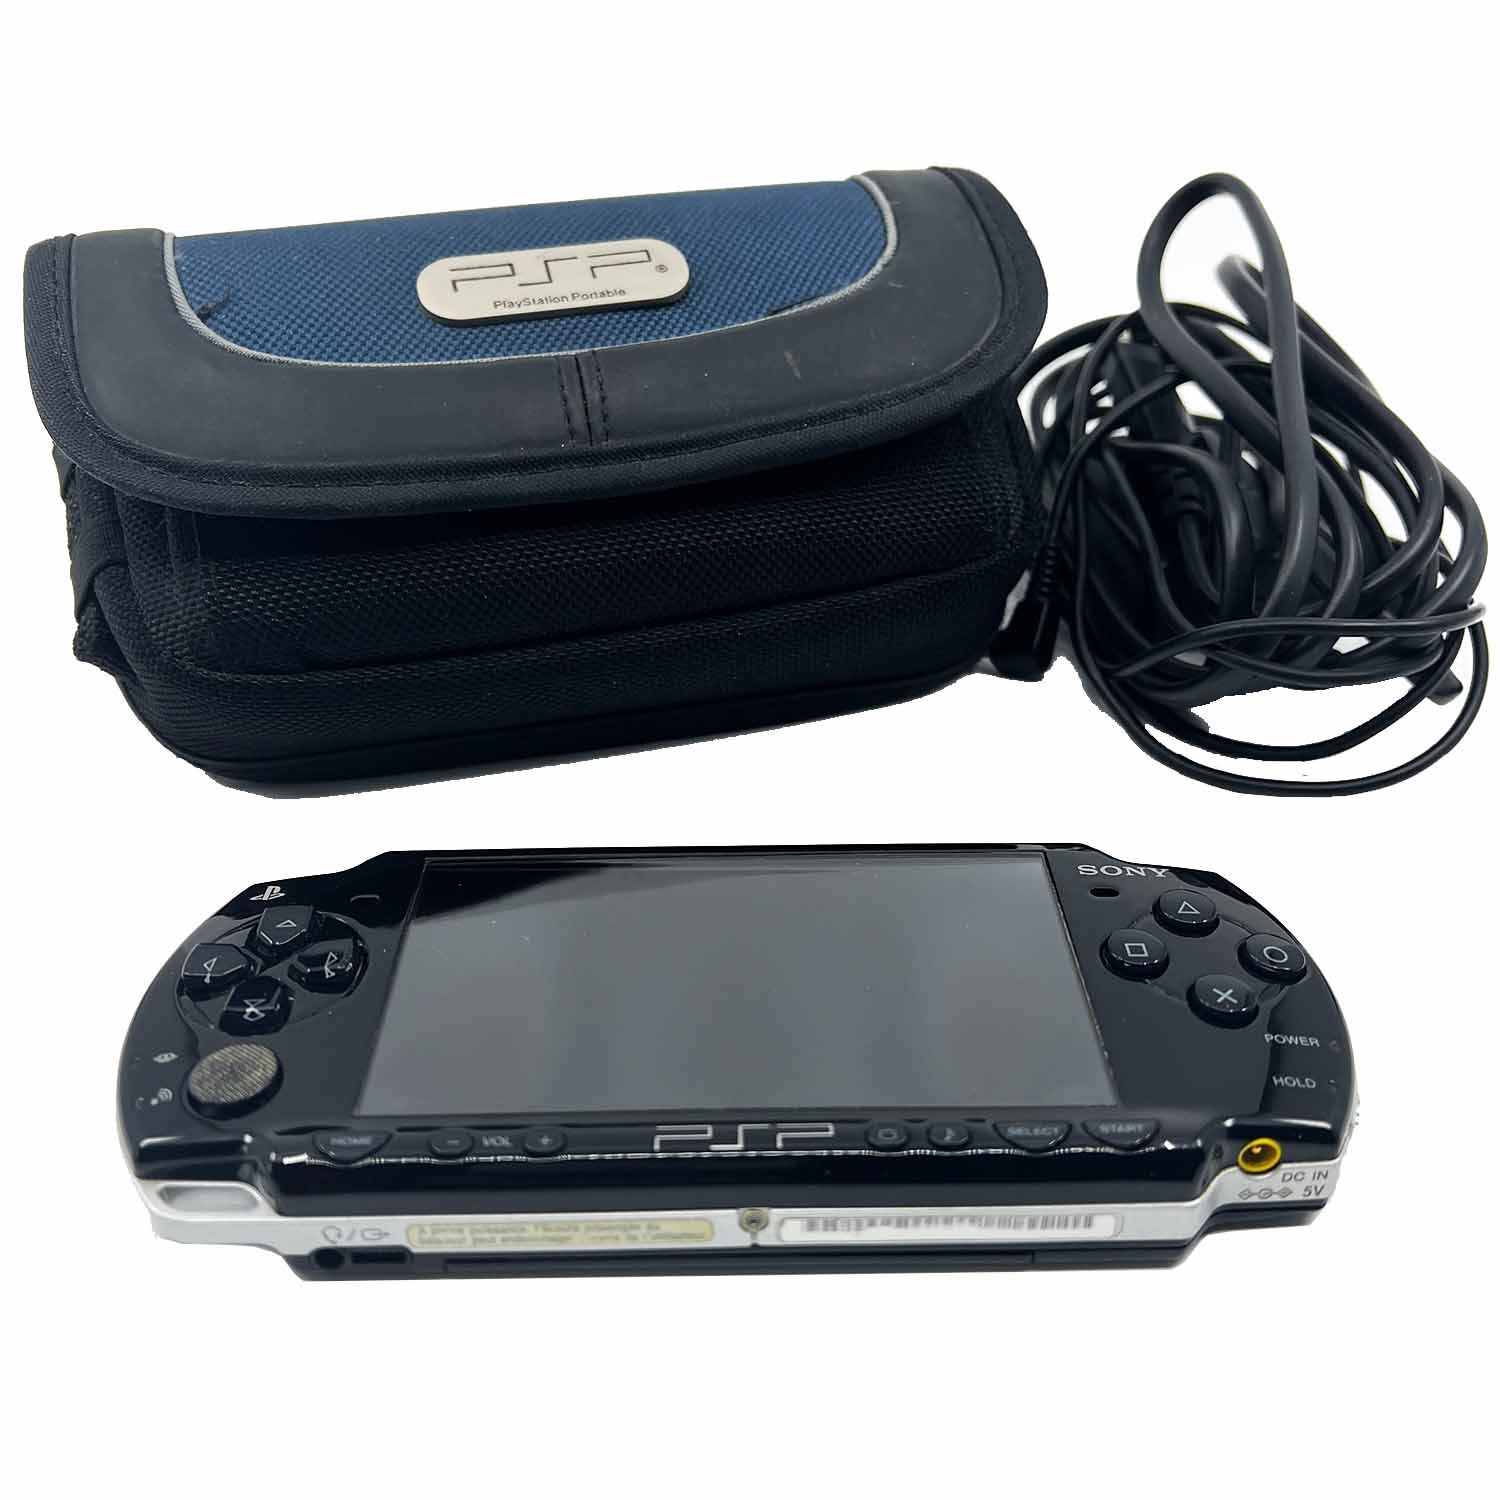 Sony Playstation Portable - Sony PSP Schwarz/Black